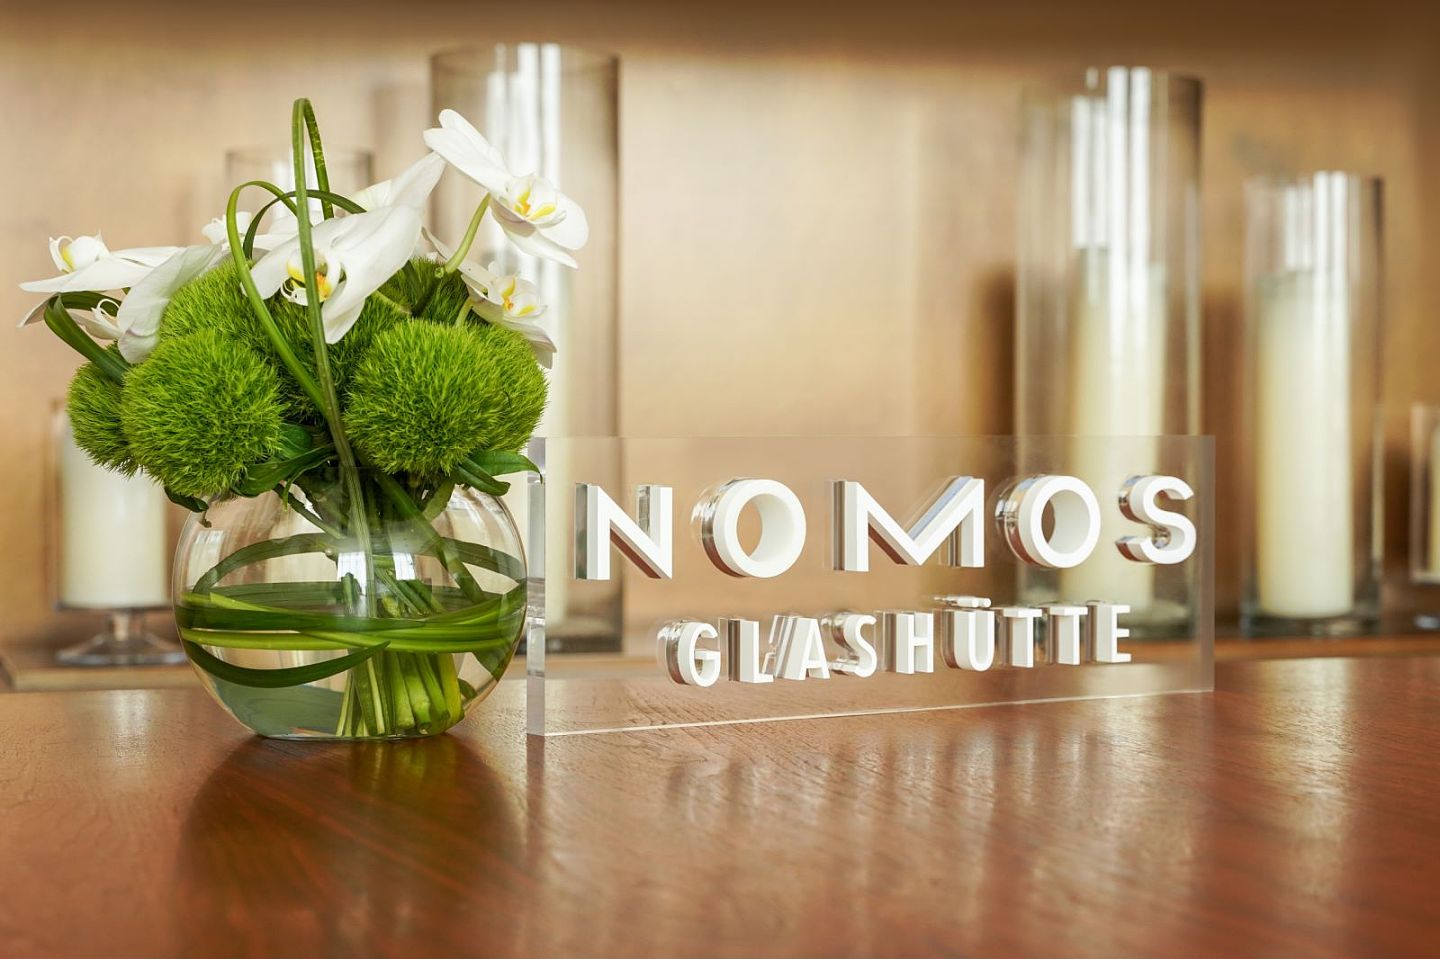 品味德系匠心 玩转极简设计 NOMOS Glashütte举办新品鉴赏活动 - 1